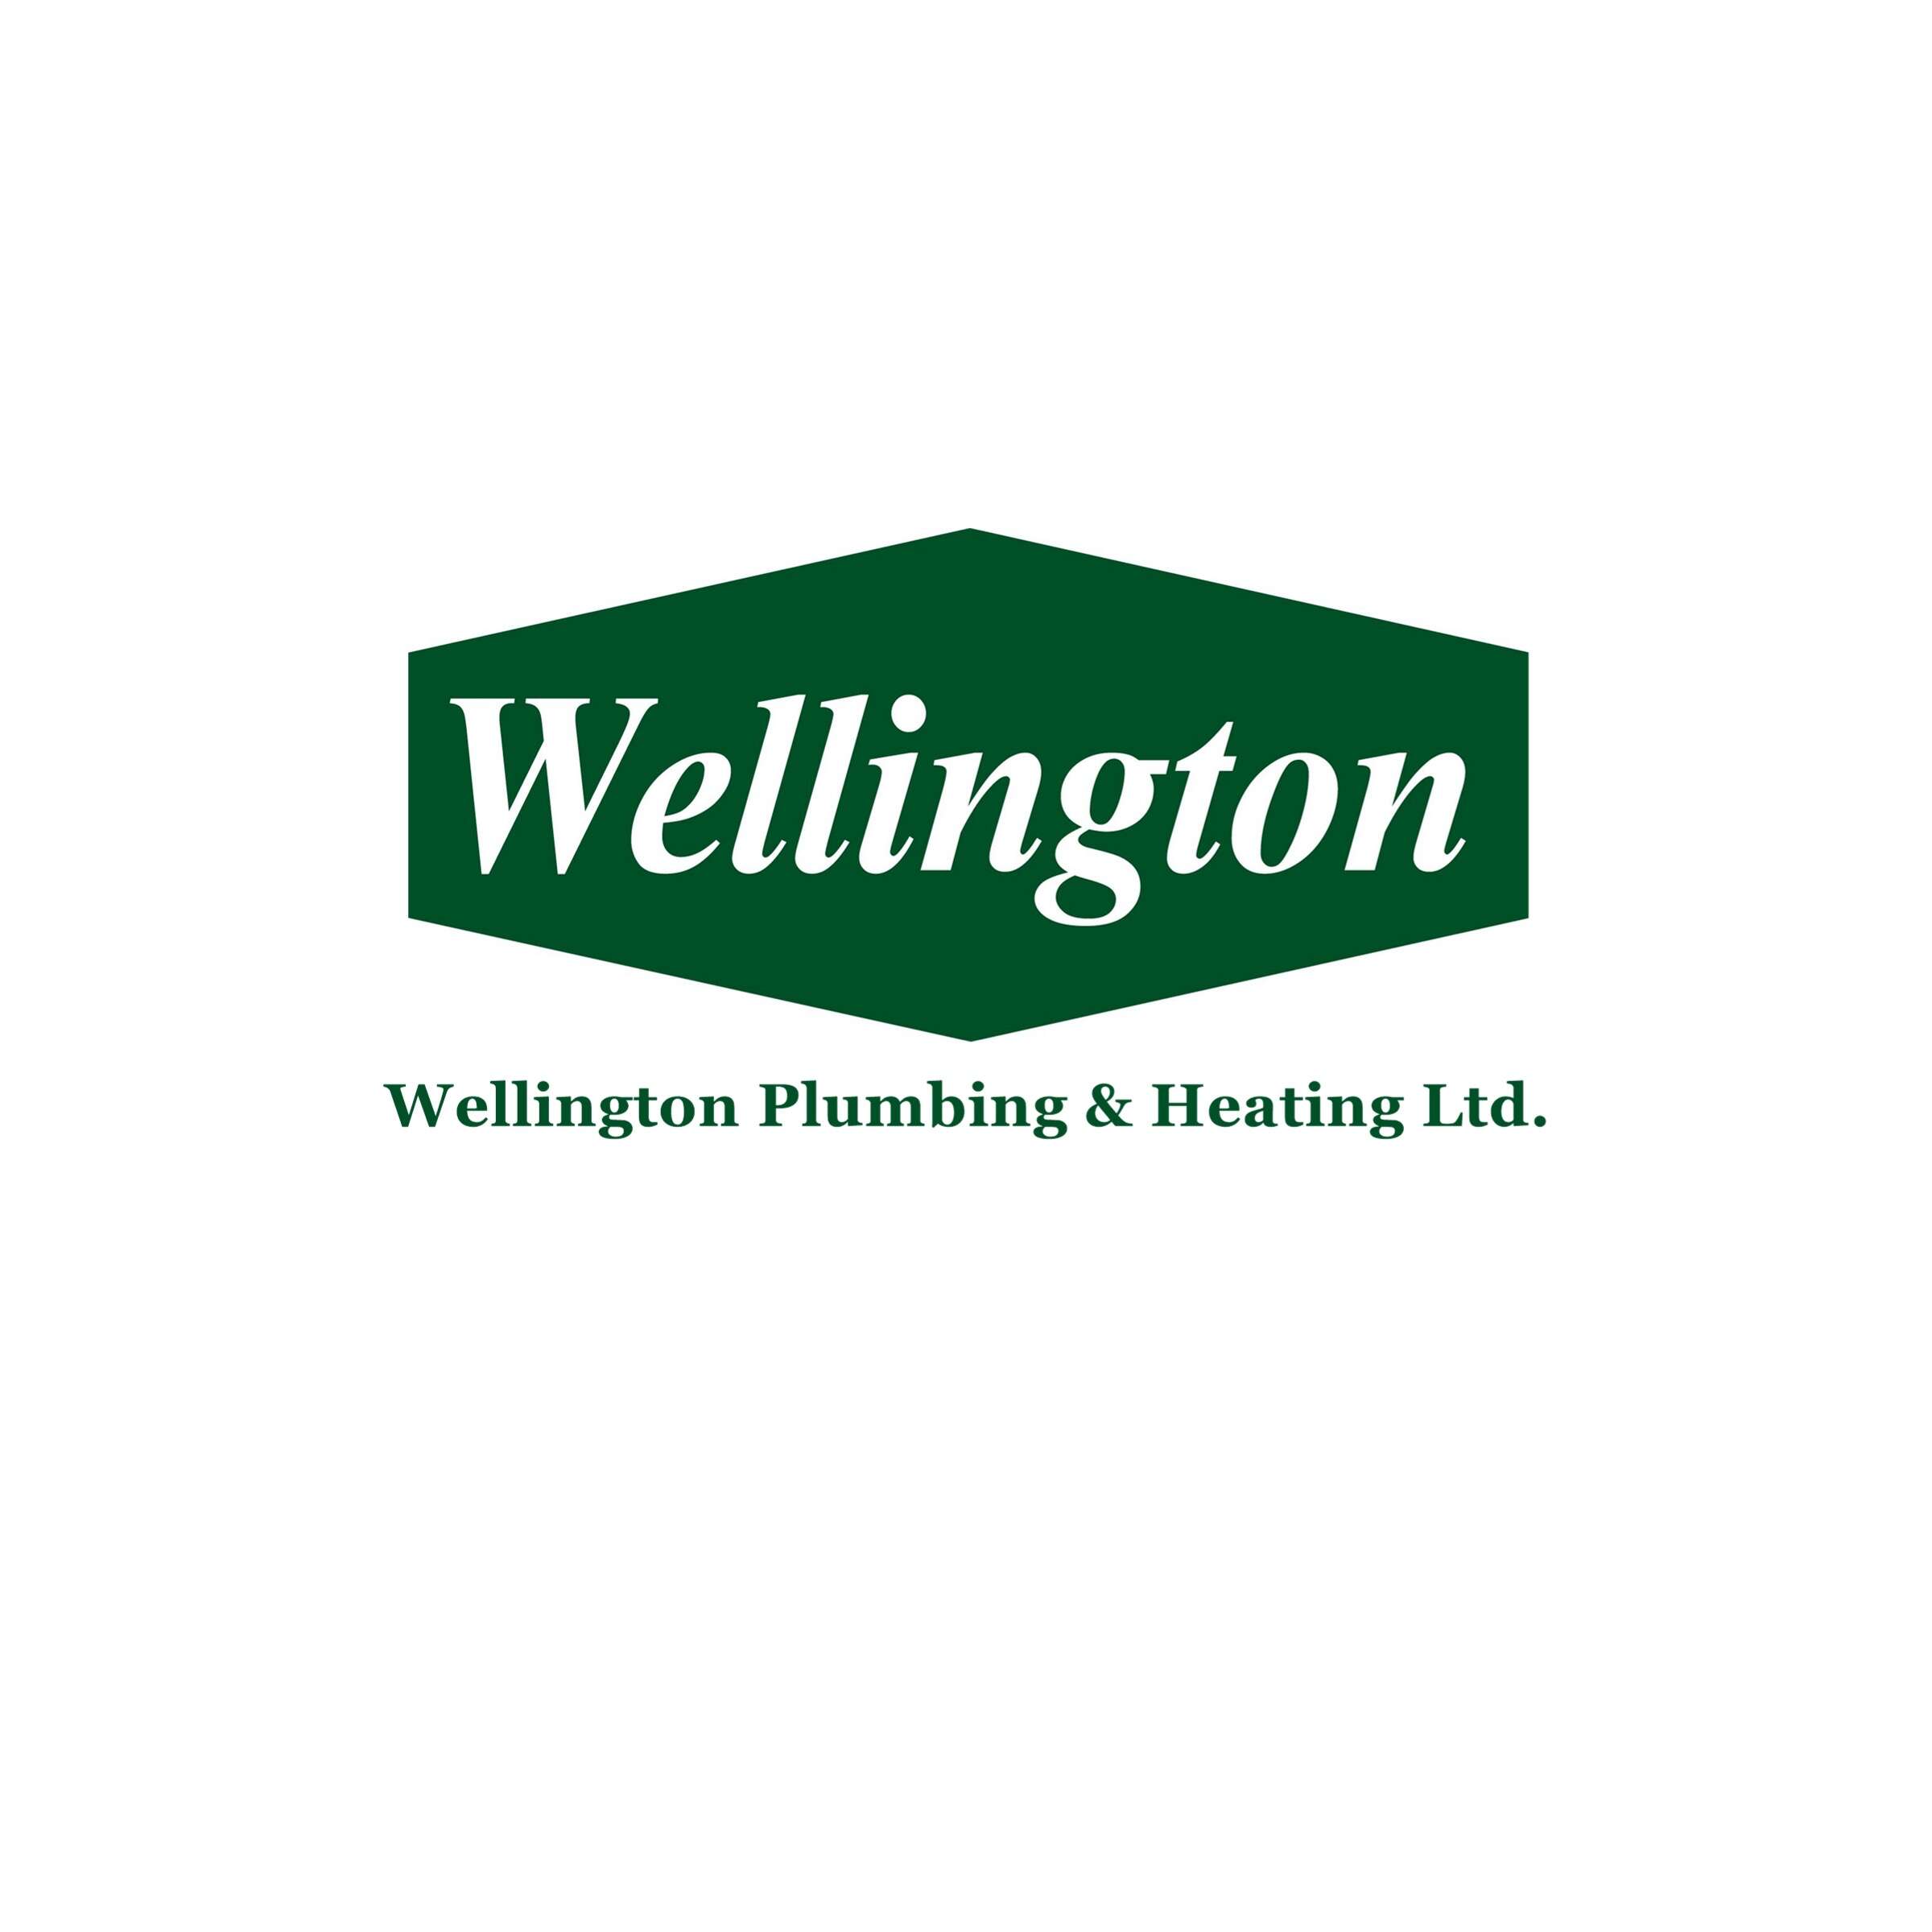 Wellington Plumbing & Heating